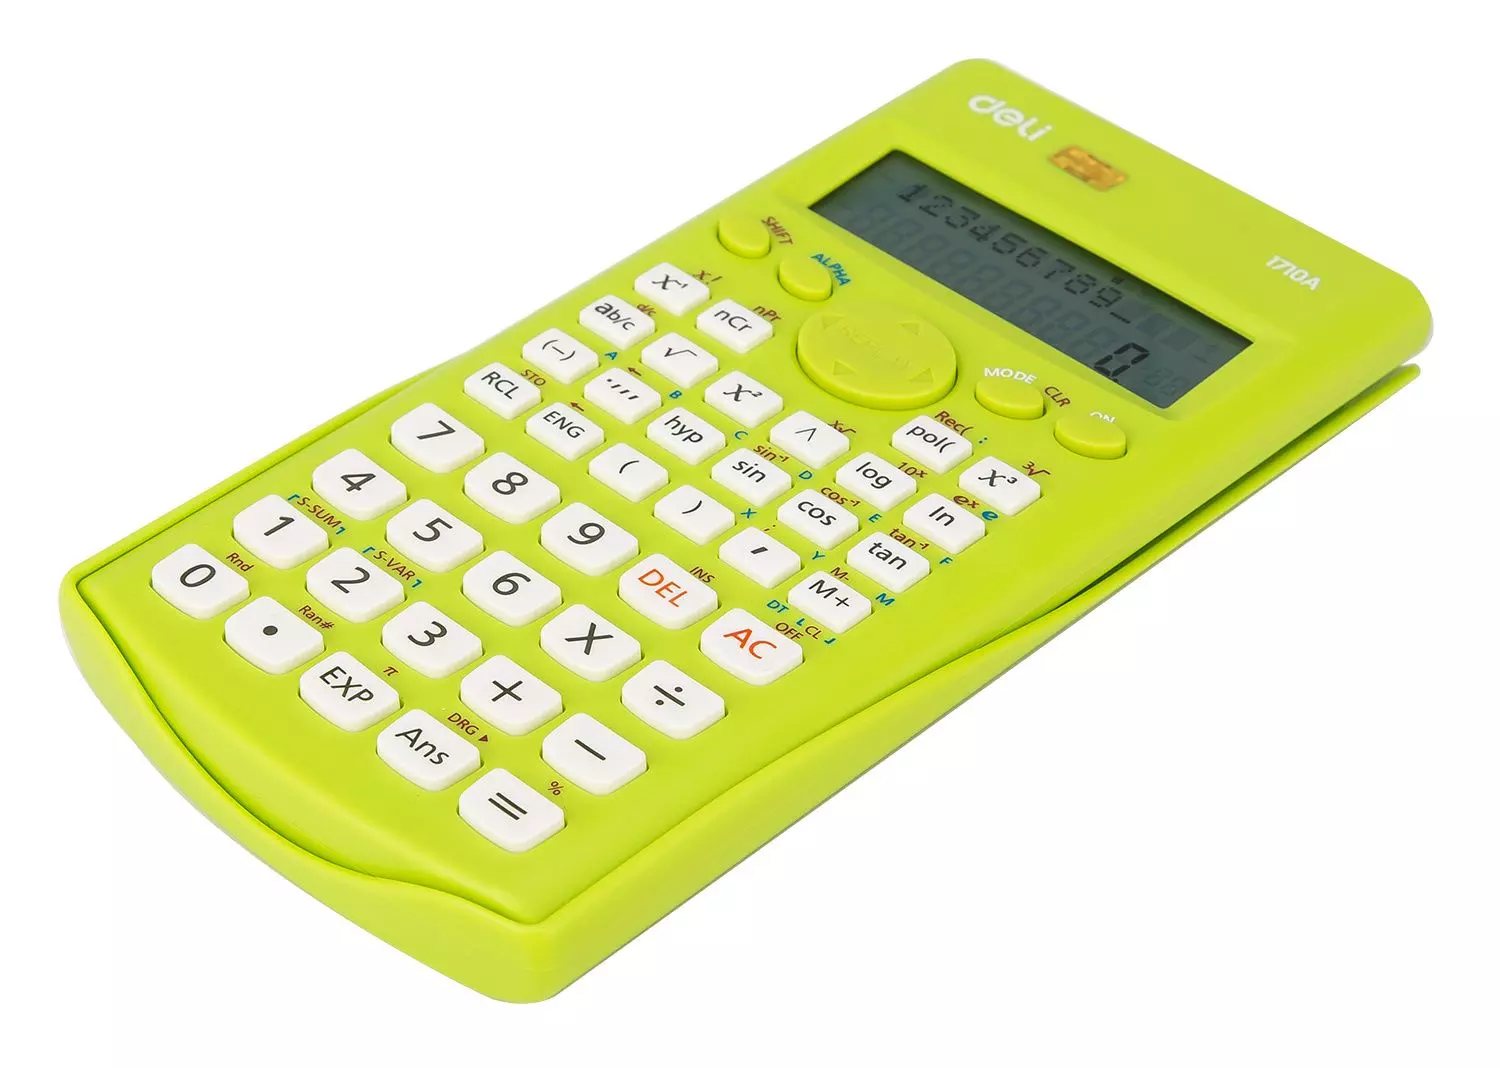 Калькулятор DELI E1710A/GRN 12 разр. научный зеленый 240 функций